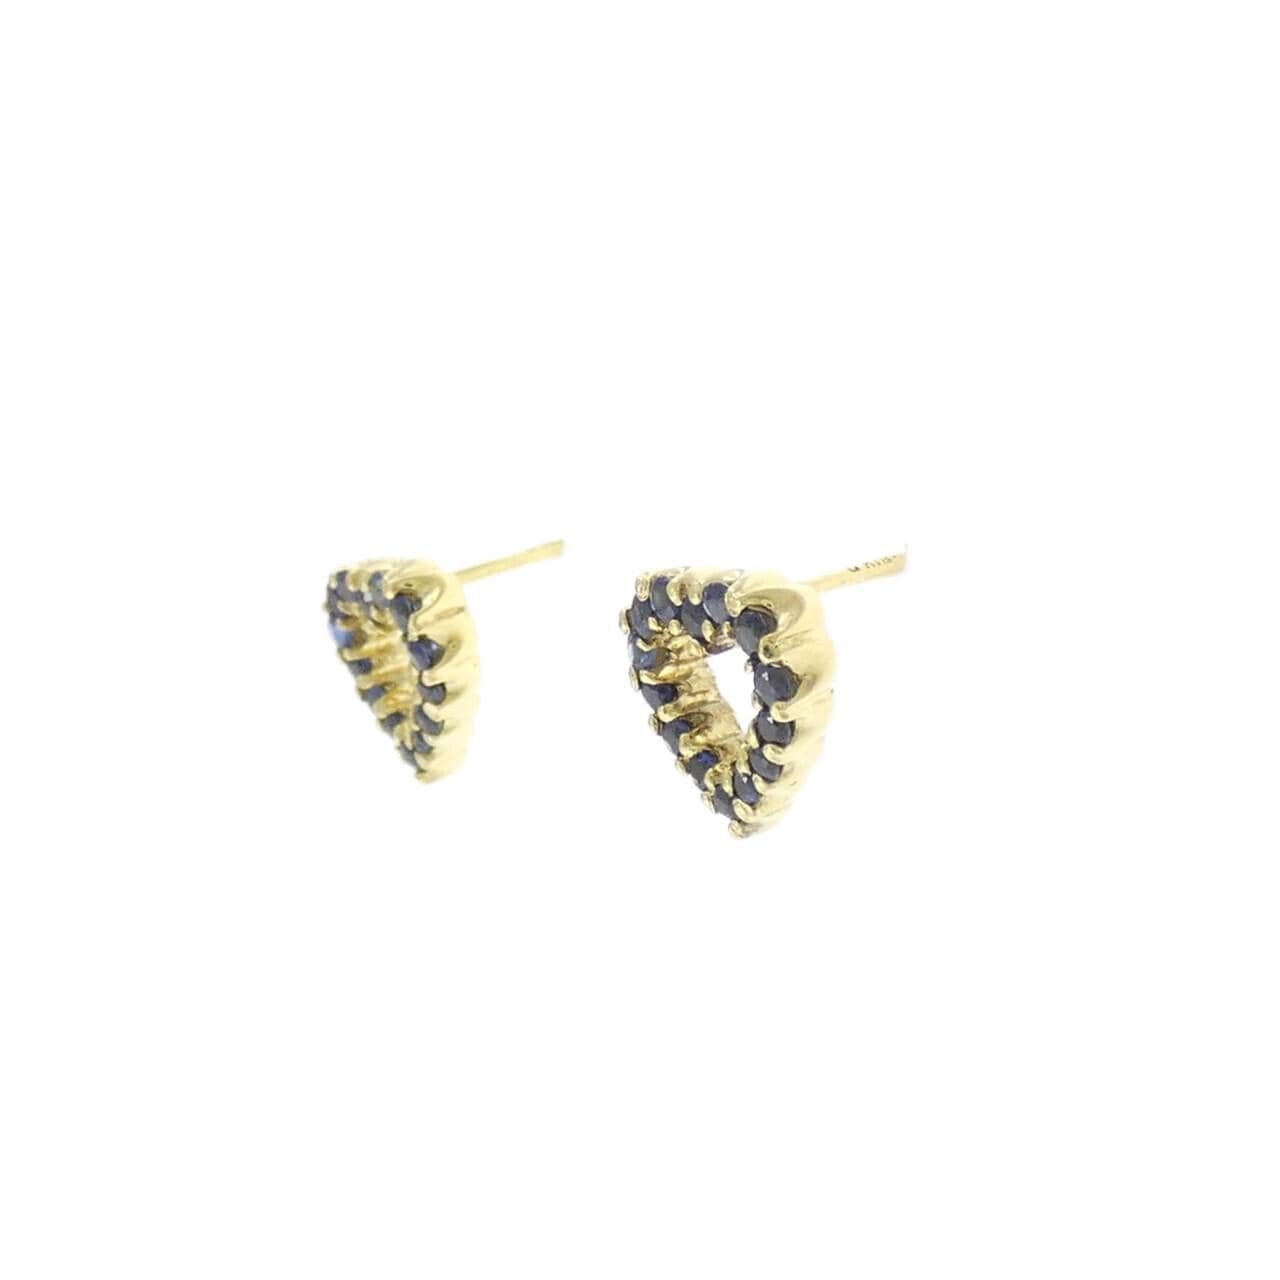 K18YG Heart Sapphire Earrings 0.34CT